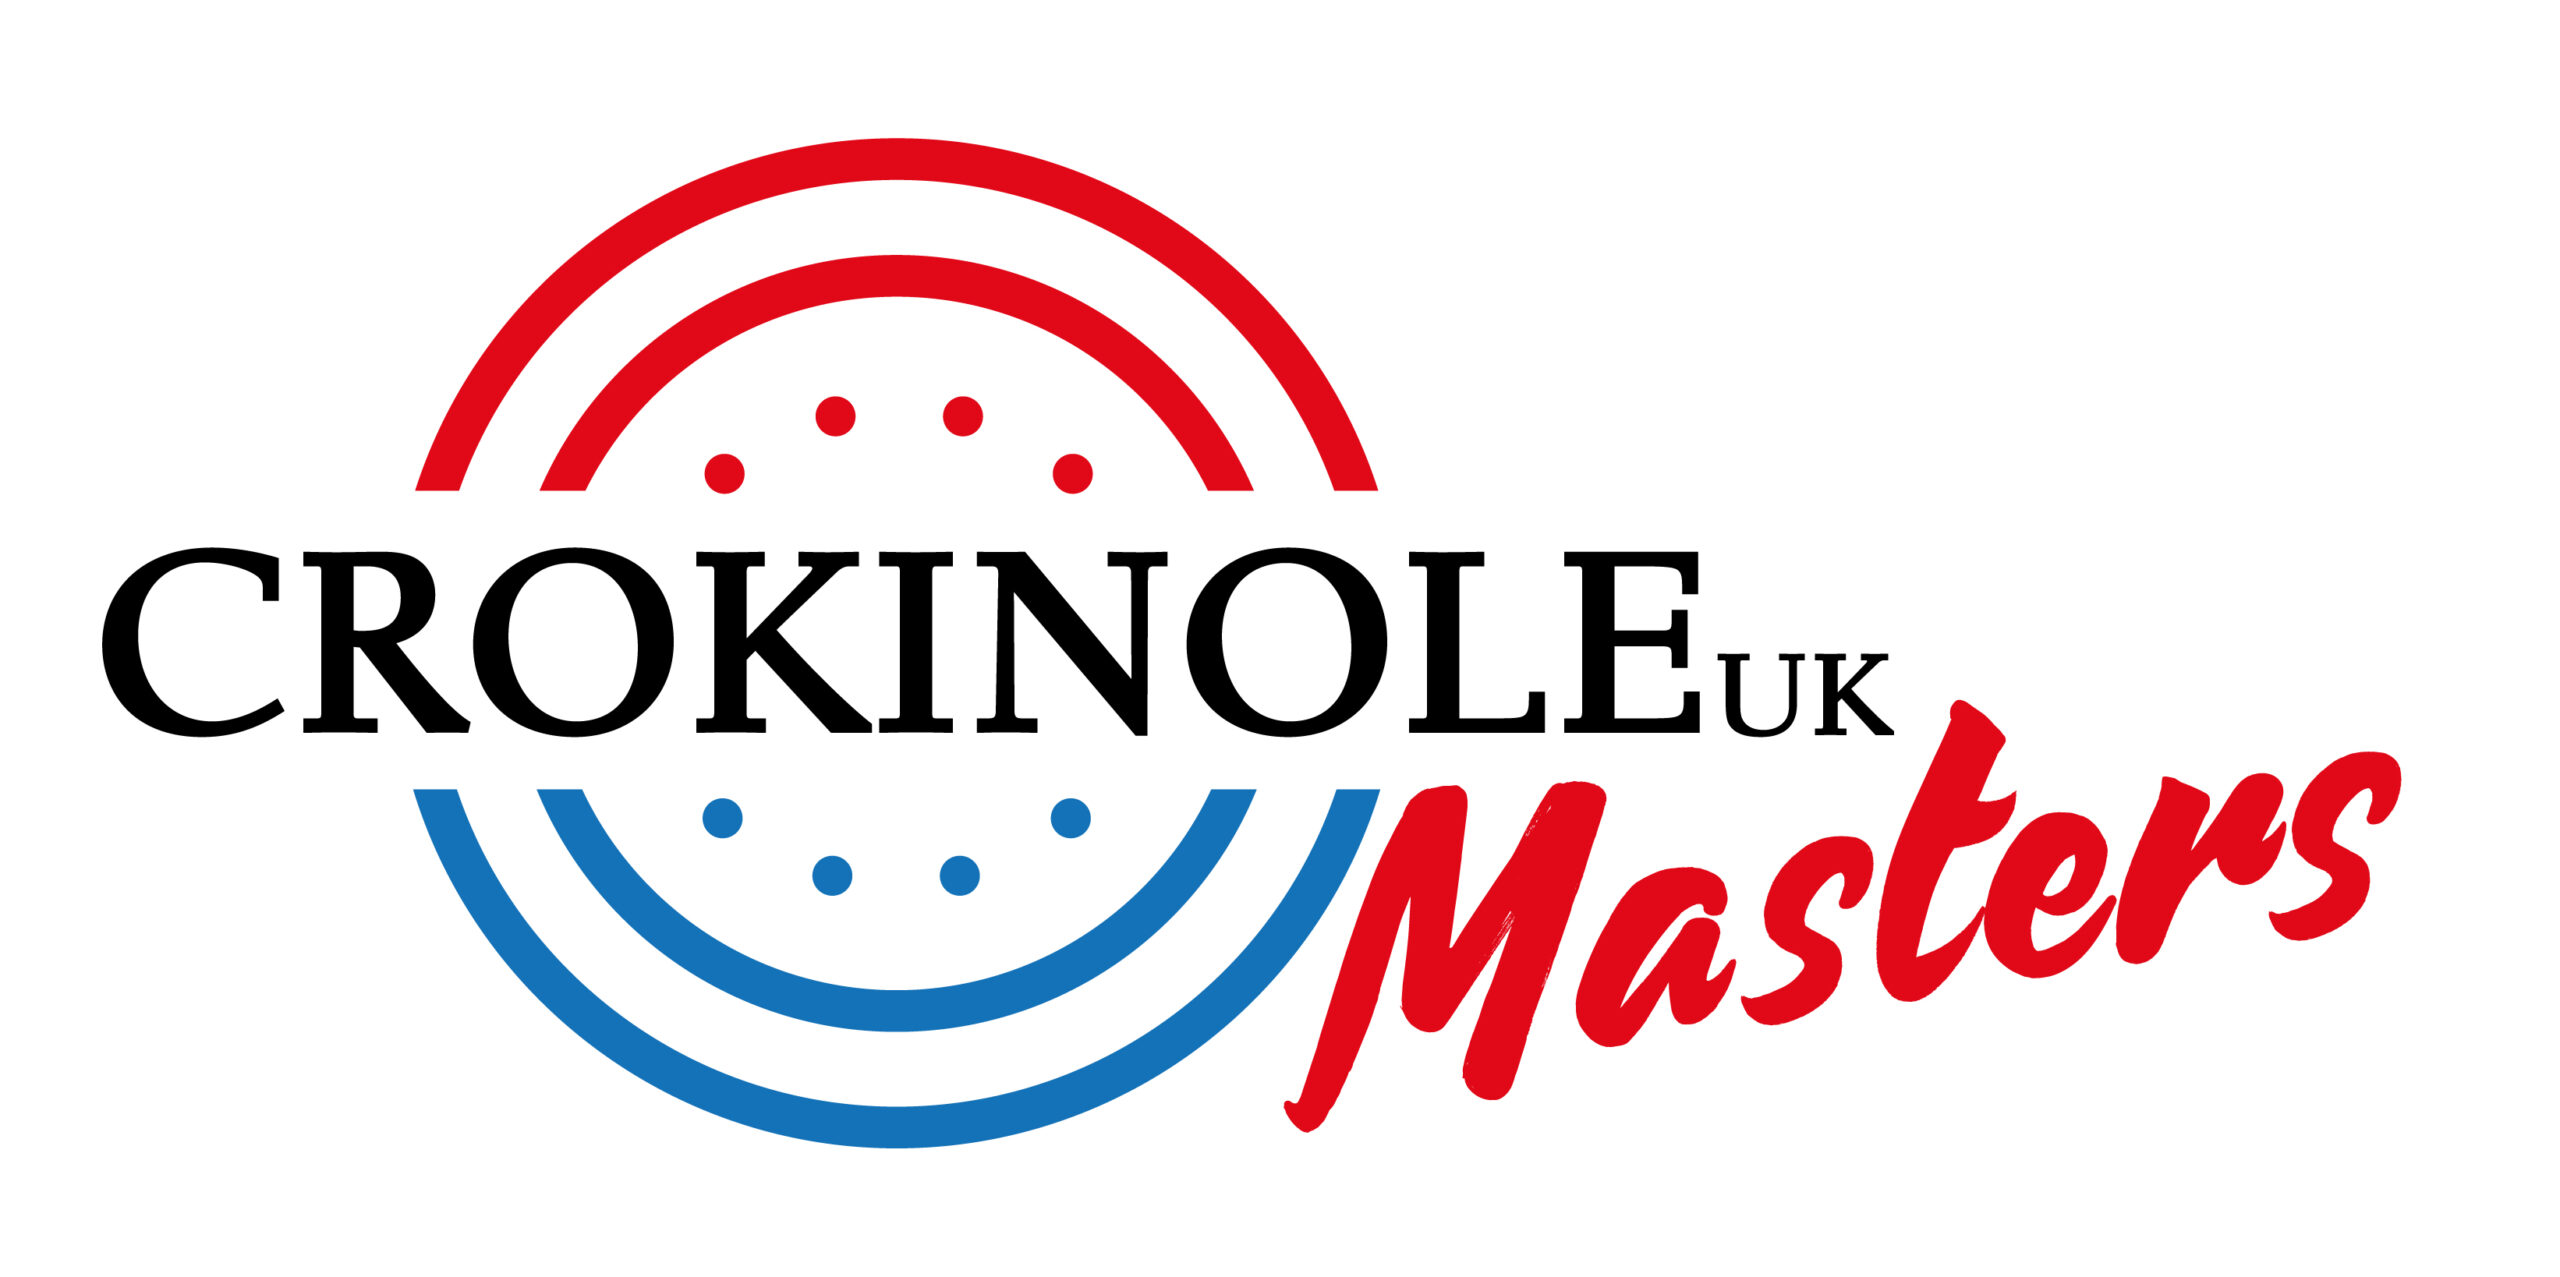 UK Crokinole Masters